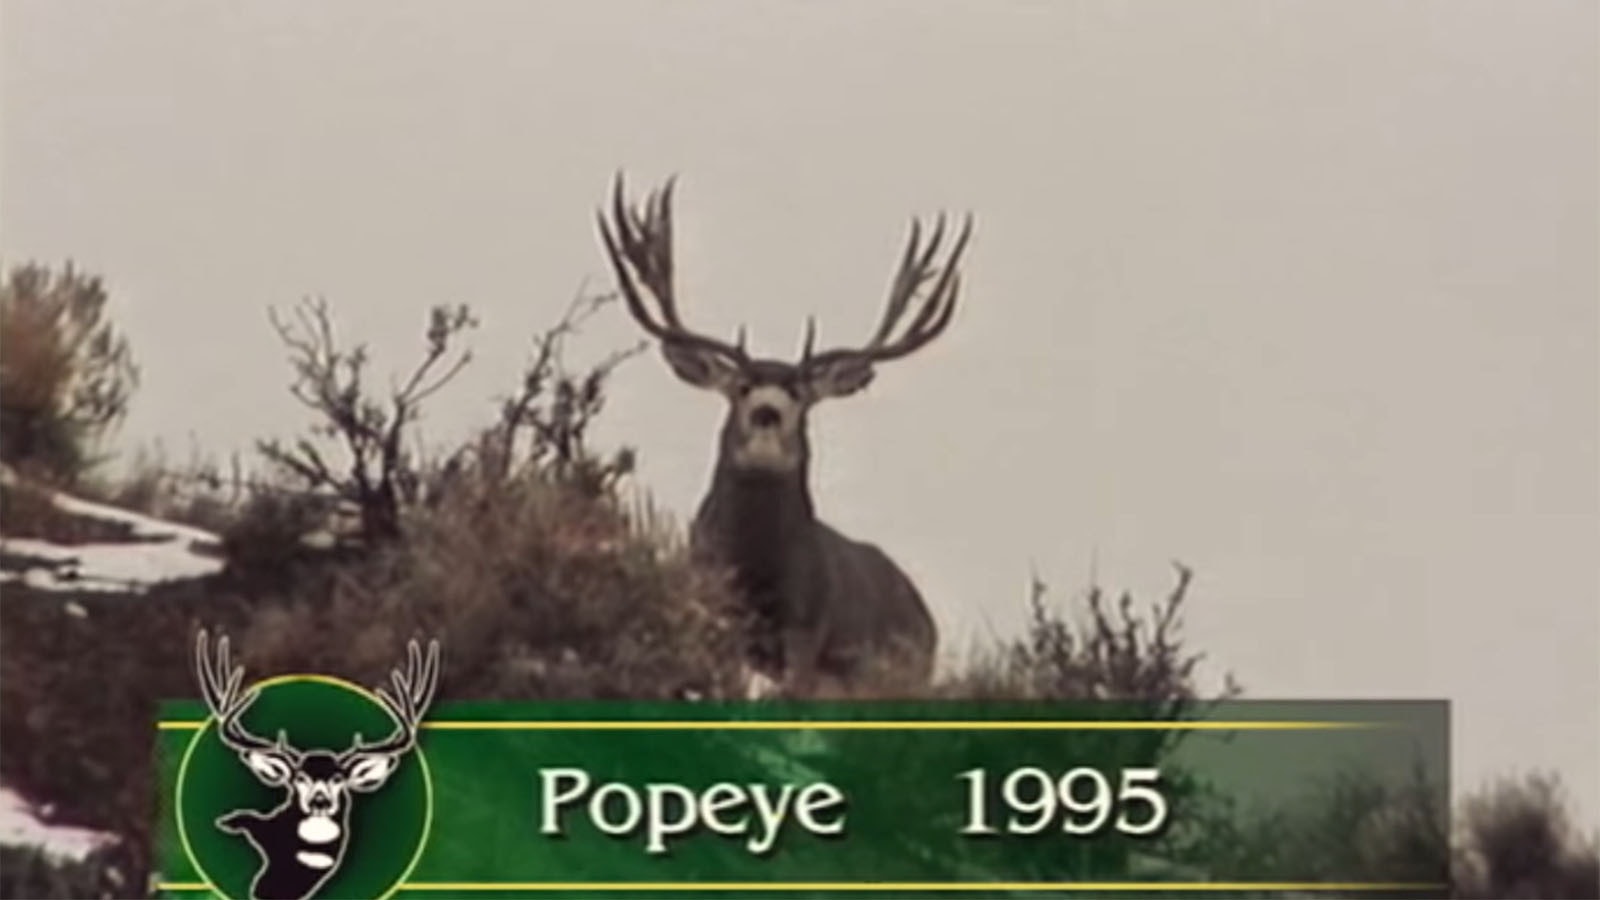 Popeye in 1995.